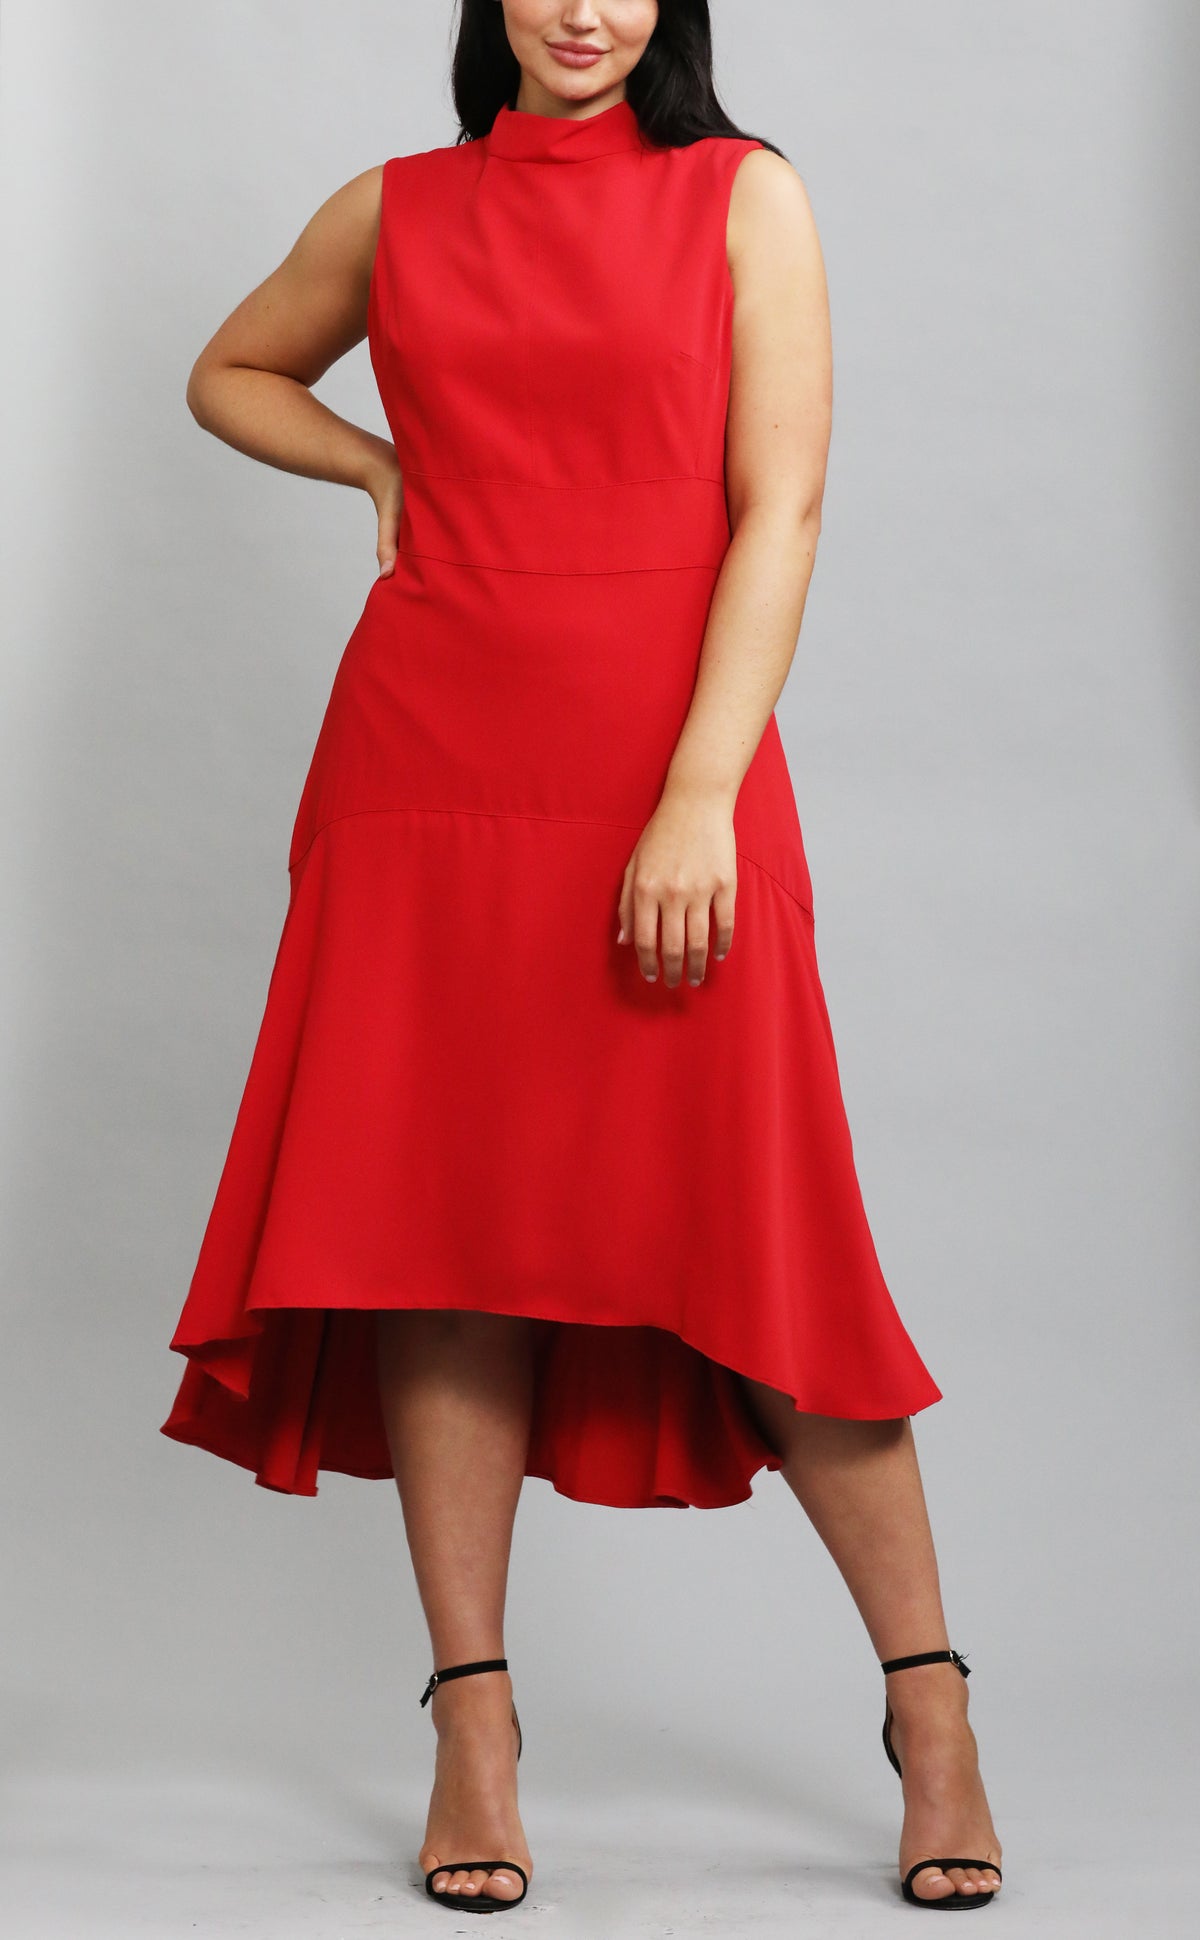 Karen Millen Red Midi Dress